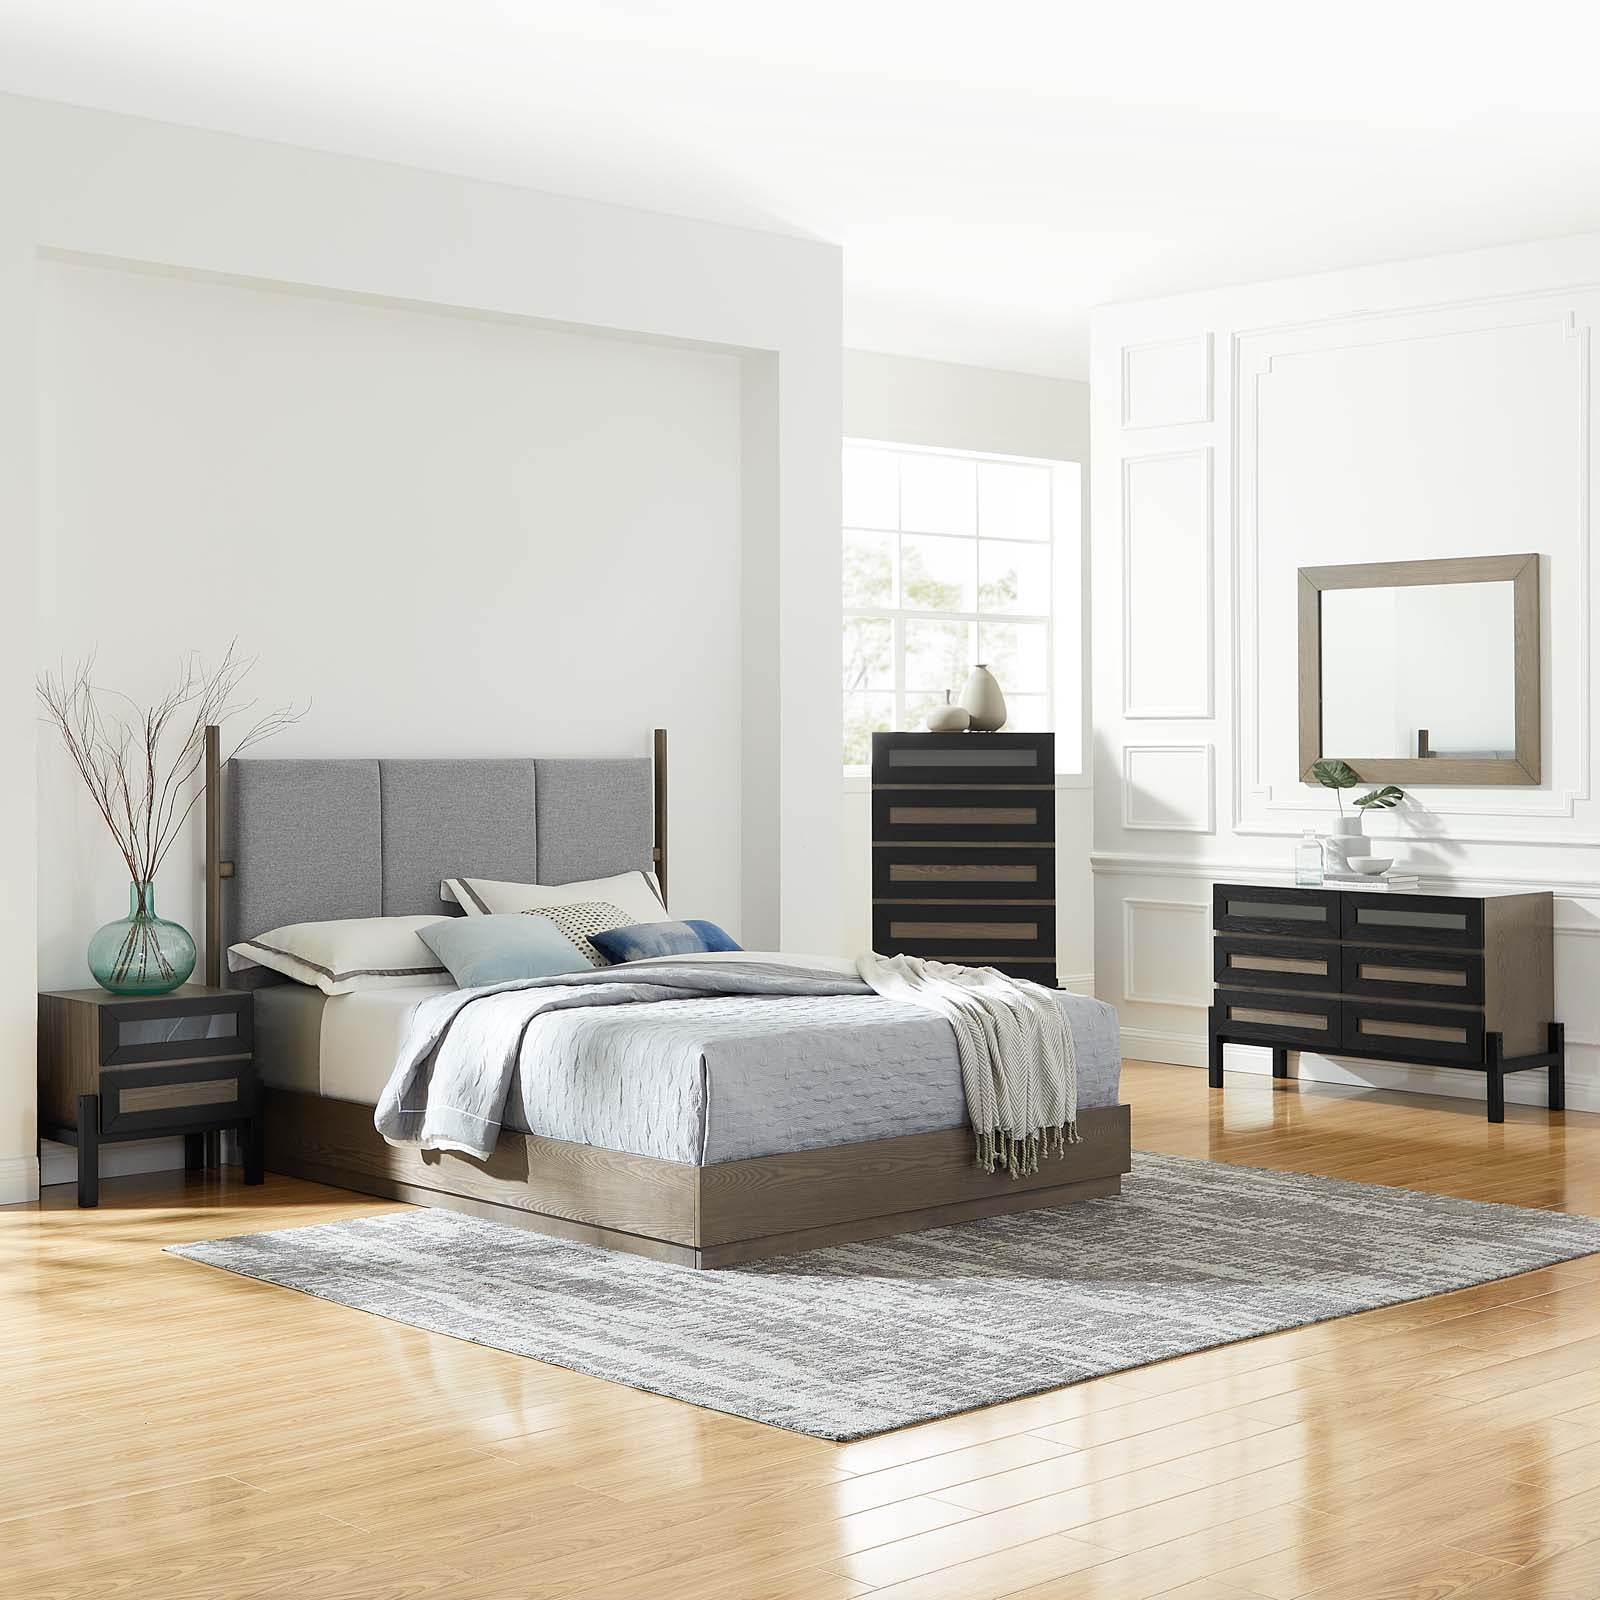 Merritt 5 Piece Upholstered Bedroom Set - East Shore Modern Home Furnishings